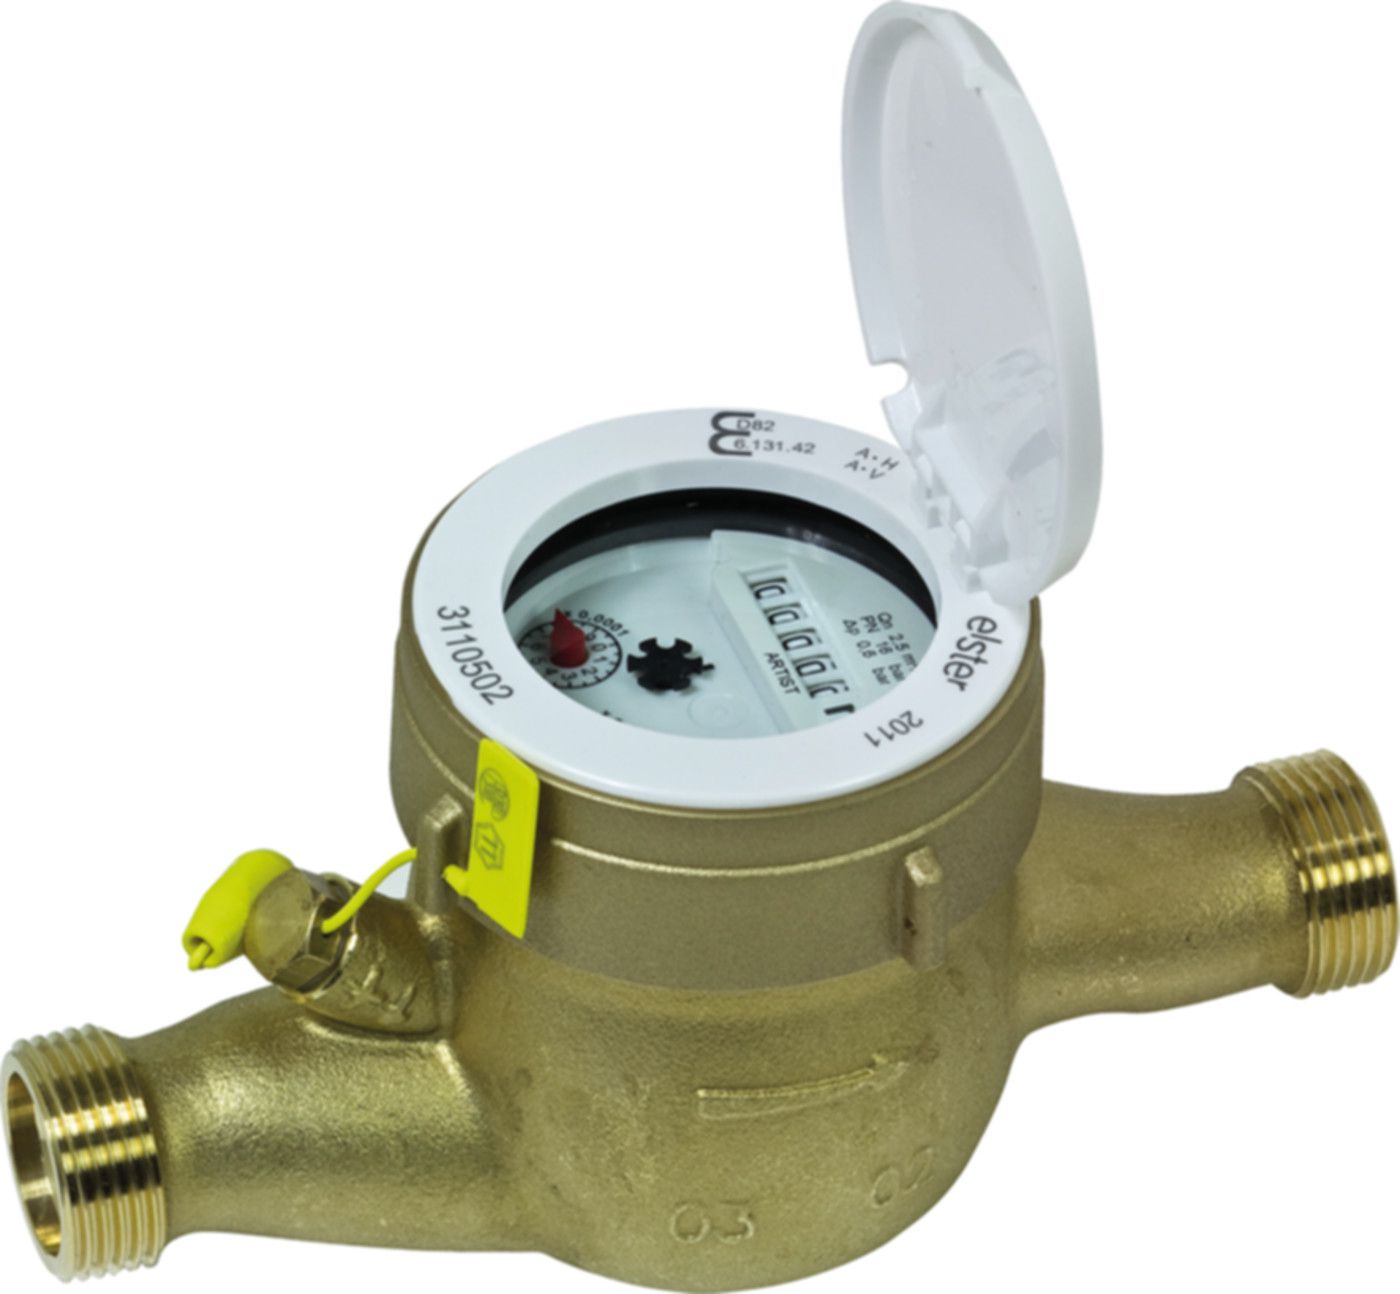 Hauswasserzähler kalt S 6.0 m3/h L = 150 mm G 11/4" blombiert 16783 - ISTA - Wärme- / Wasserzähler